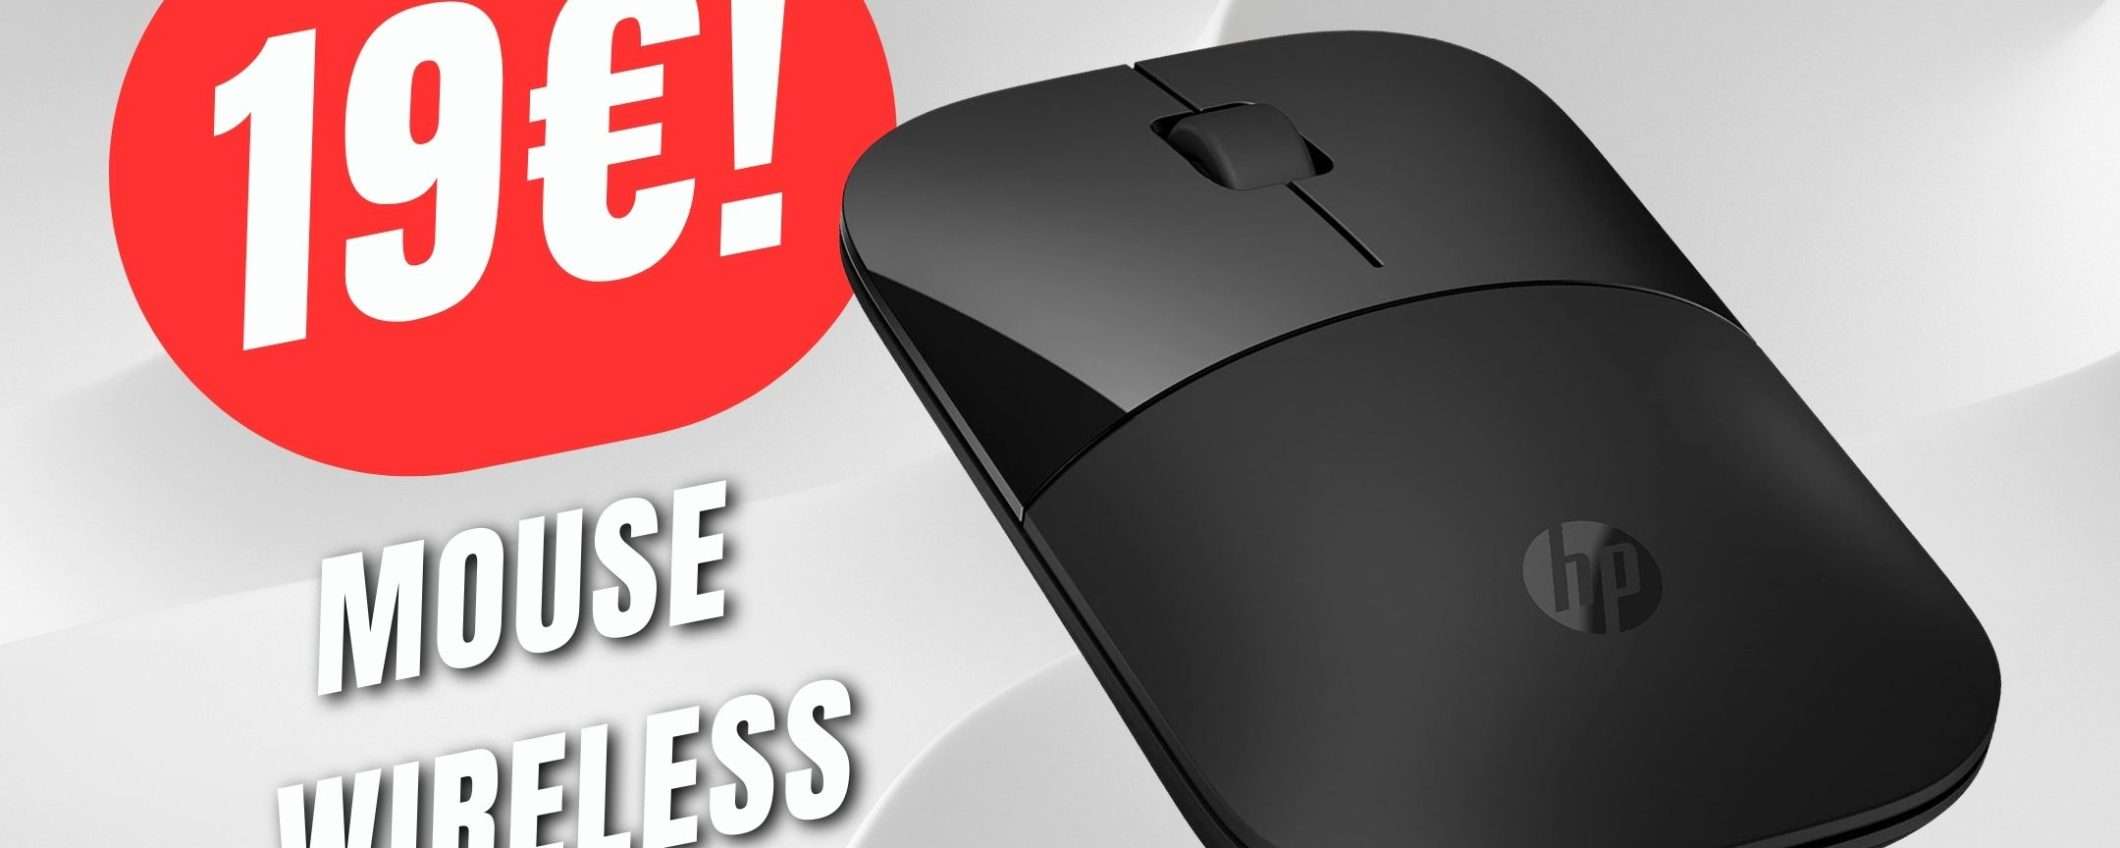 PREZZO INCREDIBILE per il Mouse Wireless HP a soli 19€!